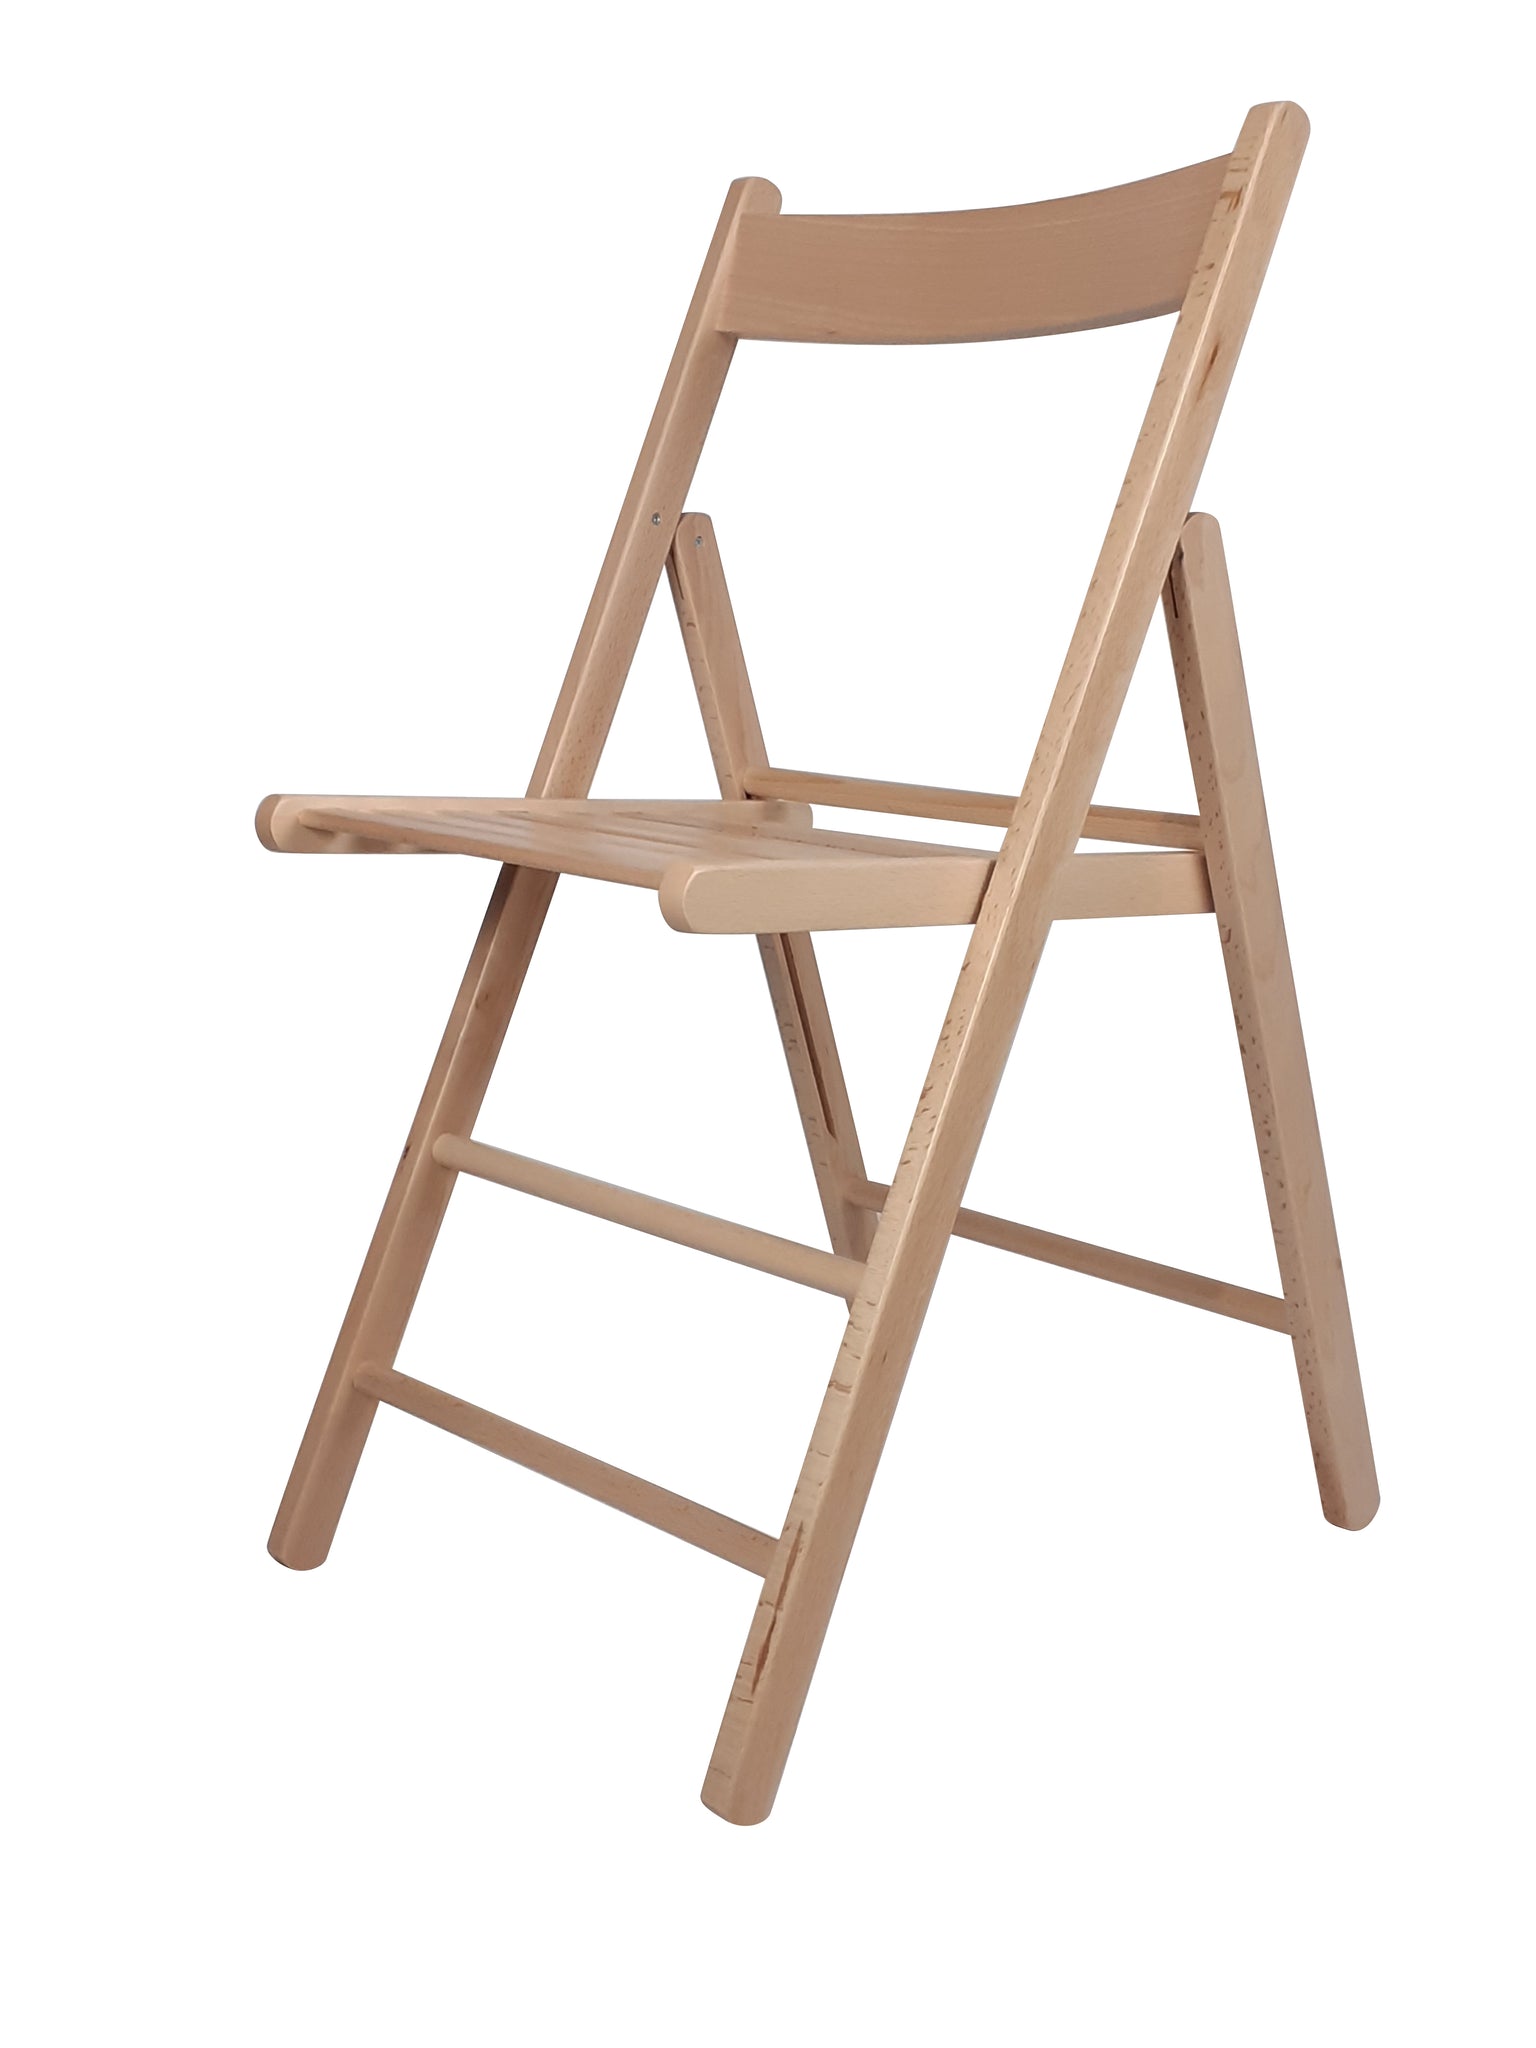 Vendita sedie pieghevoli, sedie pieghevoli in legno in offerta